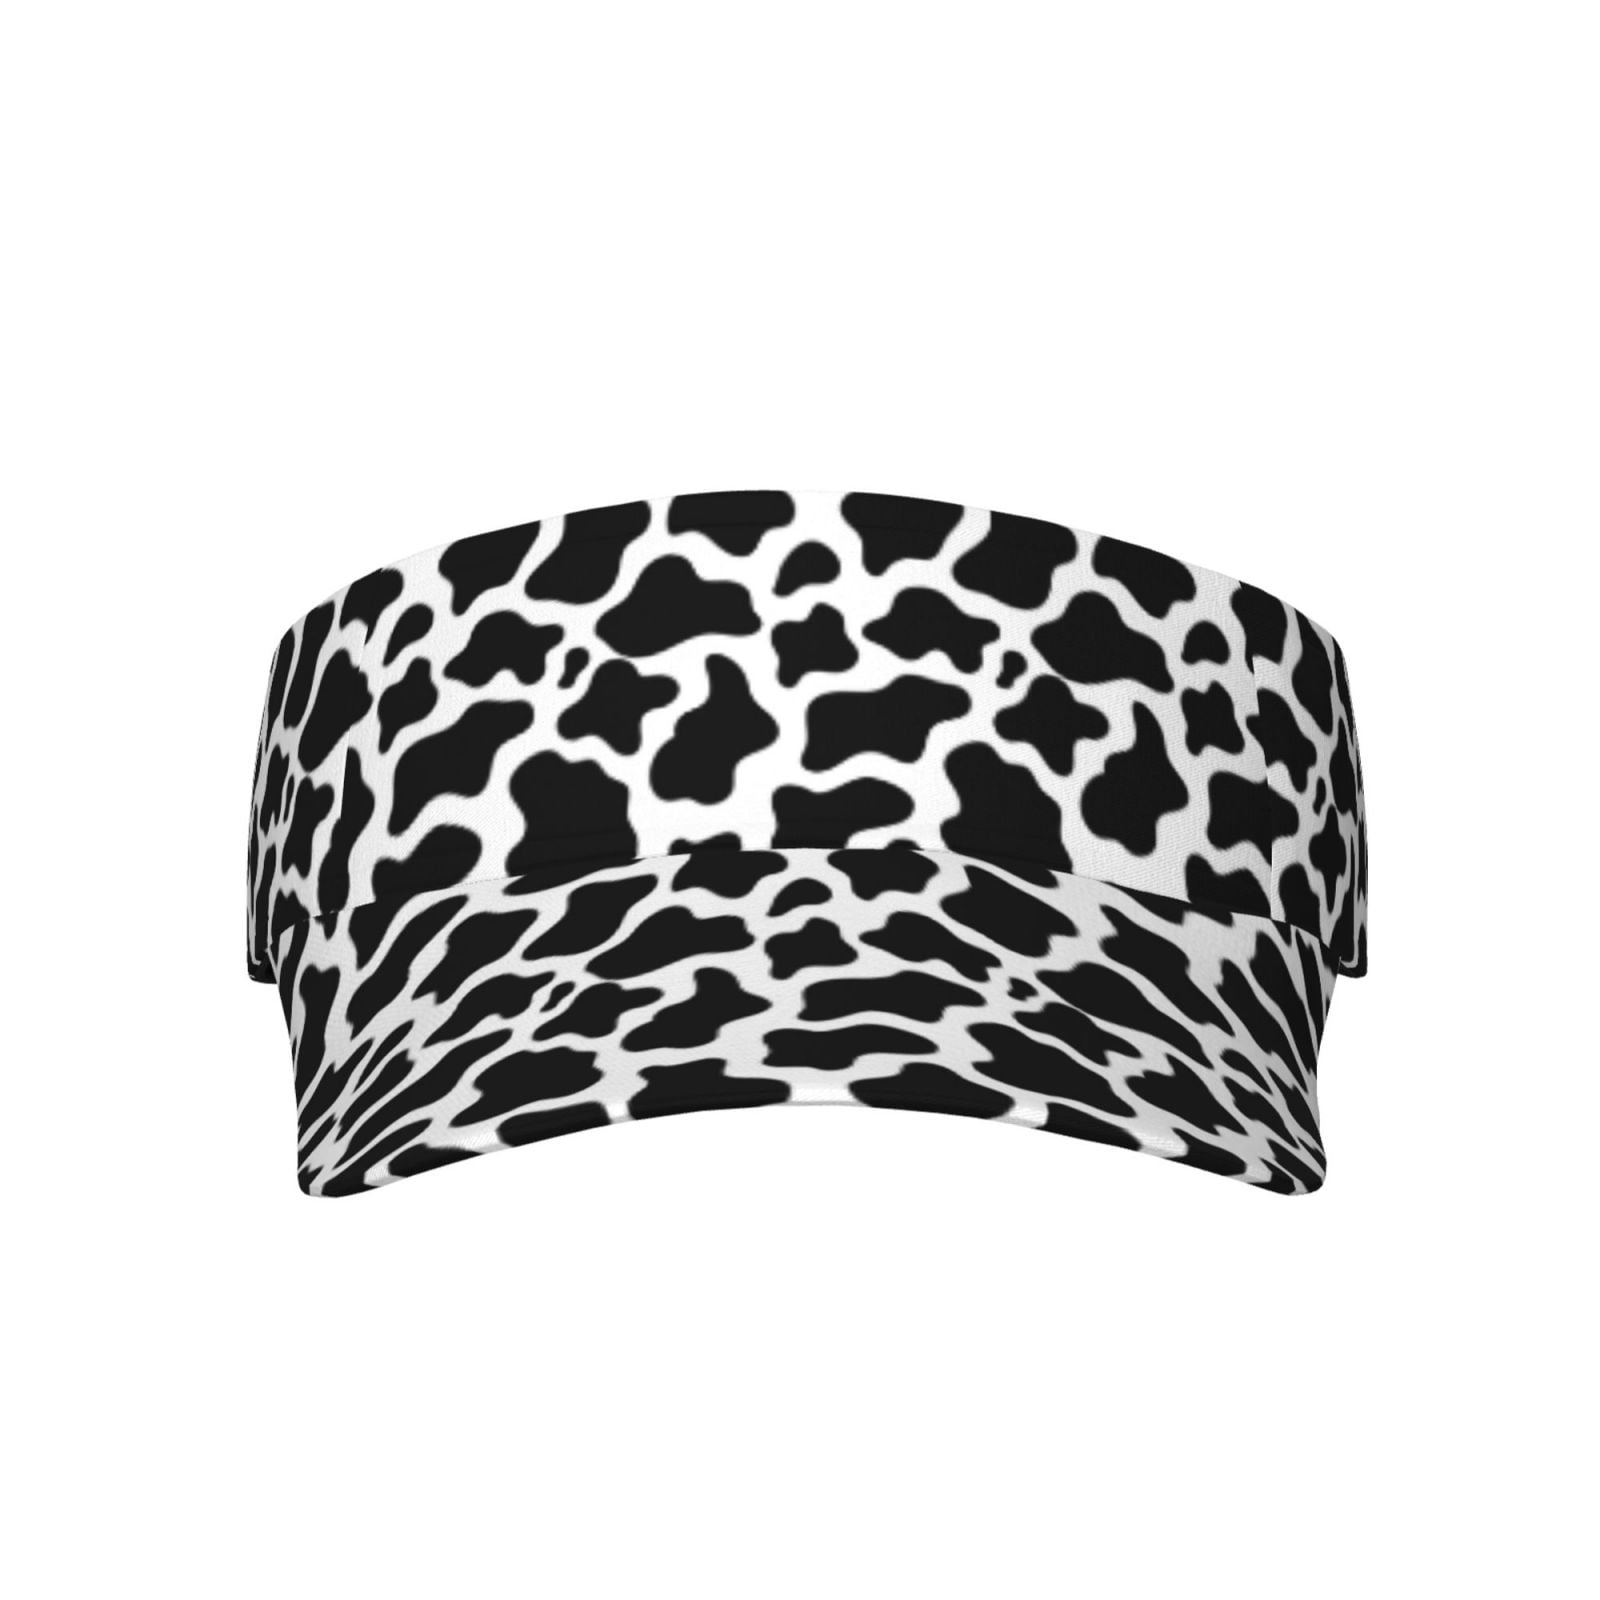 Easygdp Cow Print Black White Stretchy Visor - Unisex Visor Hat for Men ...